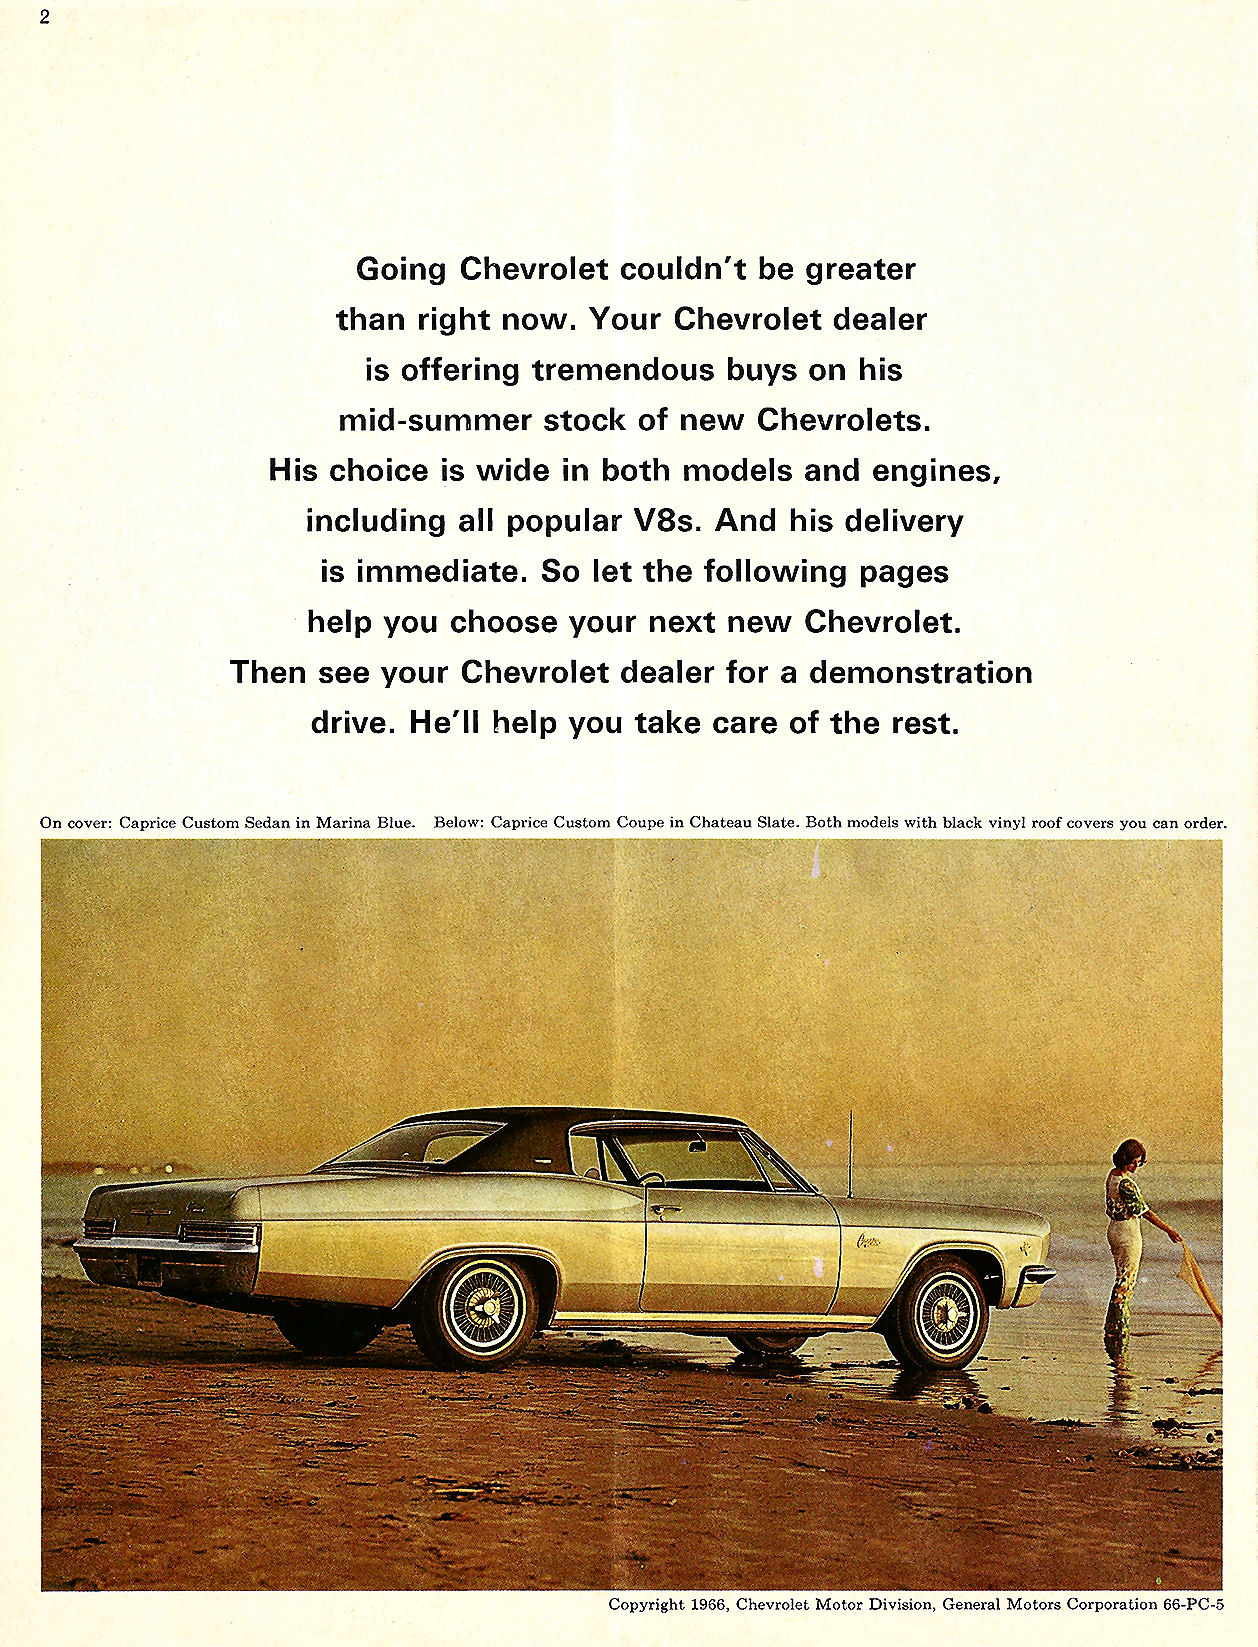 1966_Chevrolet_Great_Way_Mailer-02